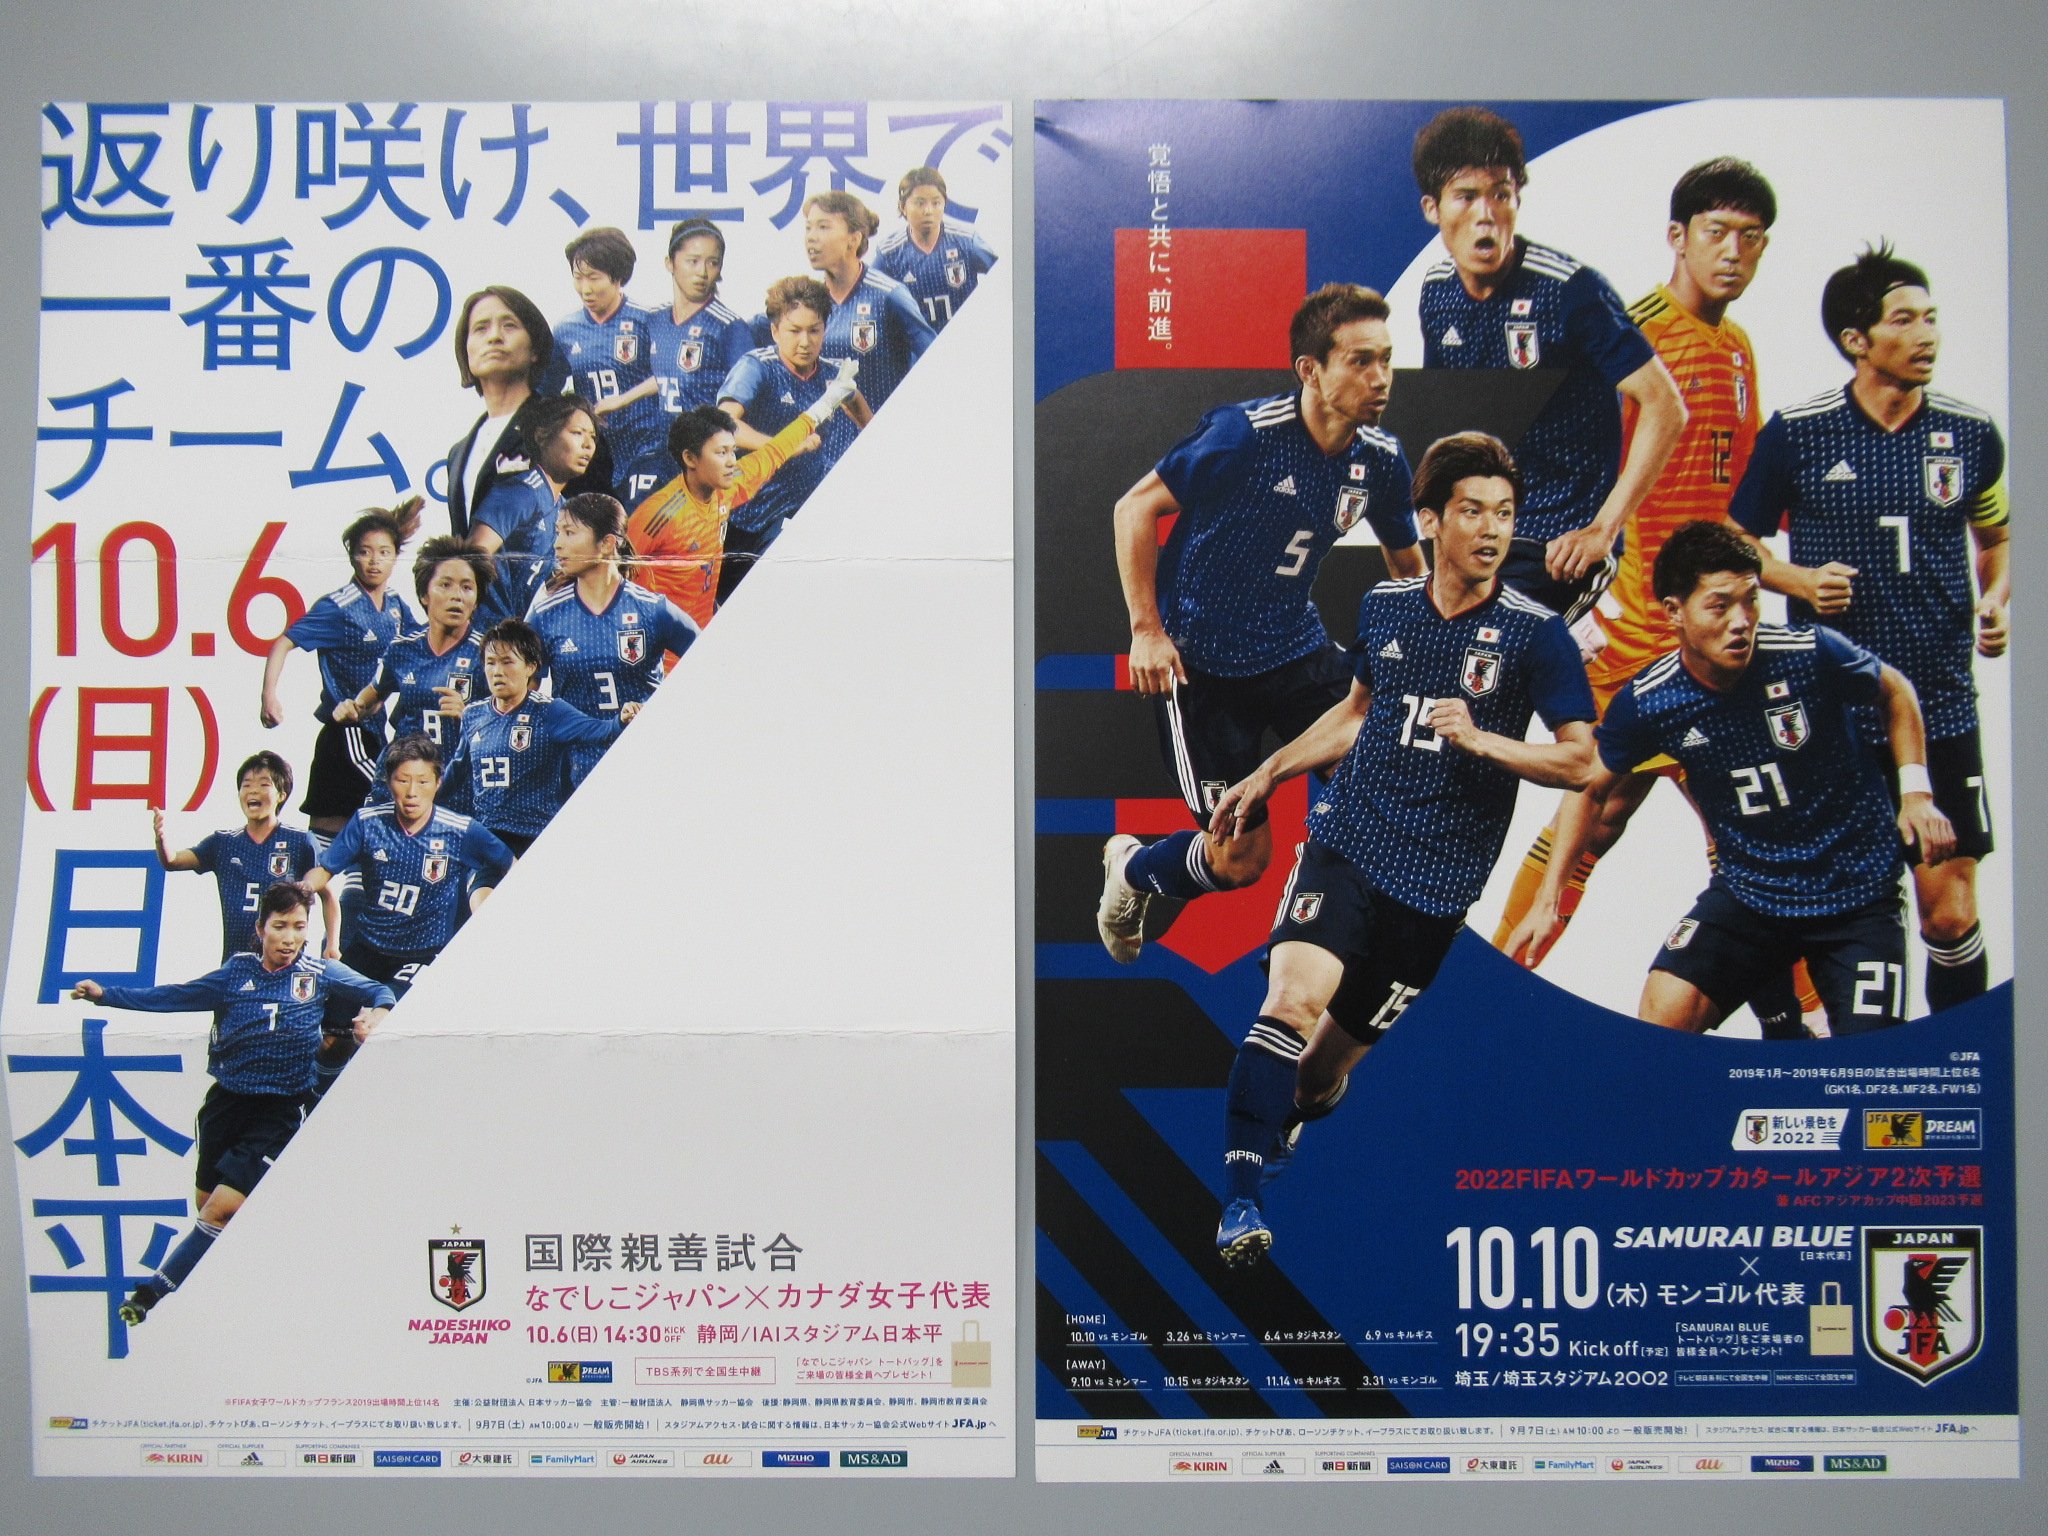 日本サッカーミュージアム ただいまミュージアムには10 6 日 に開催の国際親善試合 なでしこジャパン カナダ女子 代表と10 10 木 に開催するワールドカップカタールアジア2次予選のsamurai Blue モンゴル代表のポスター チラシを館内に掲出しています